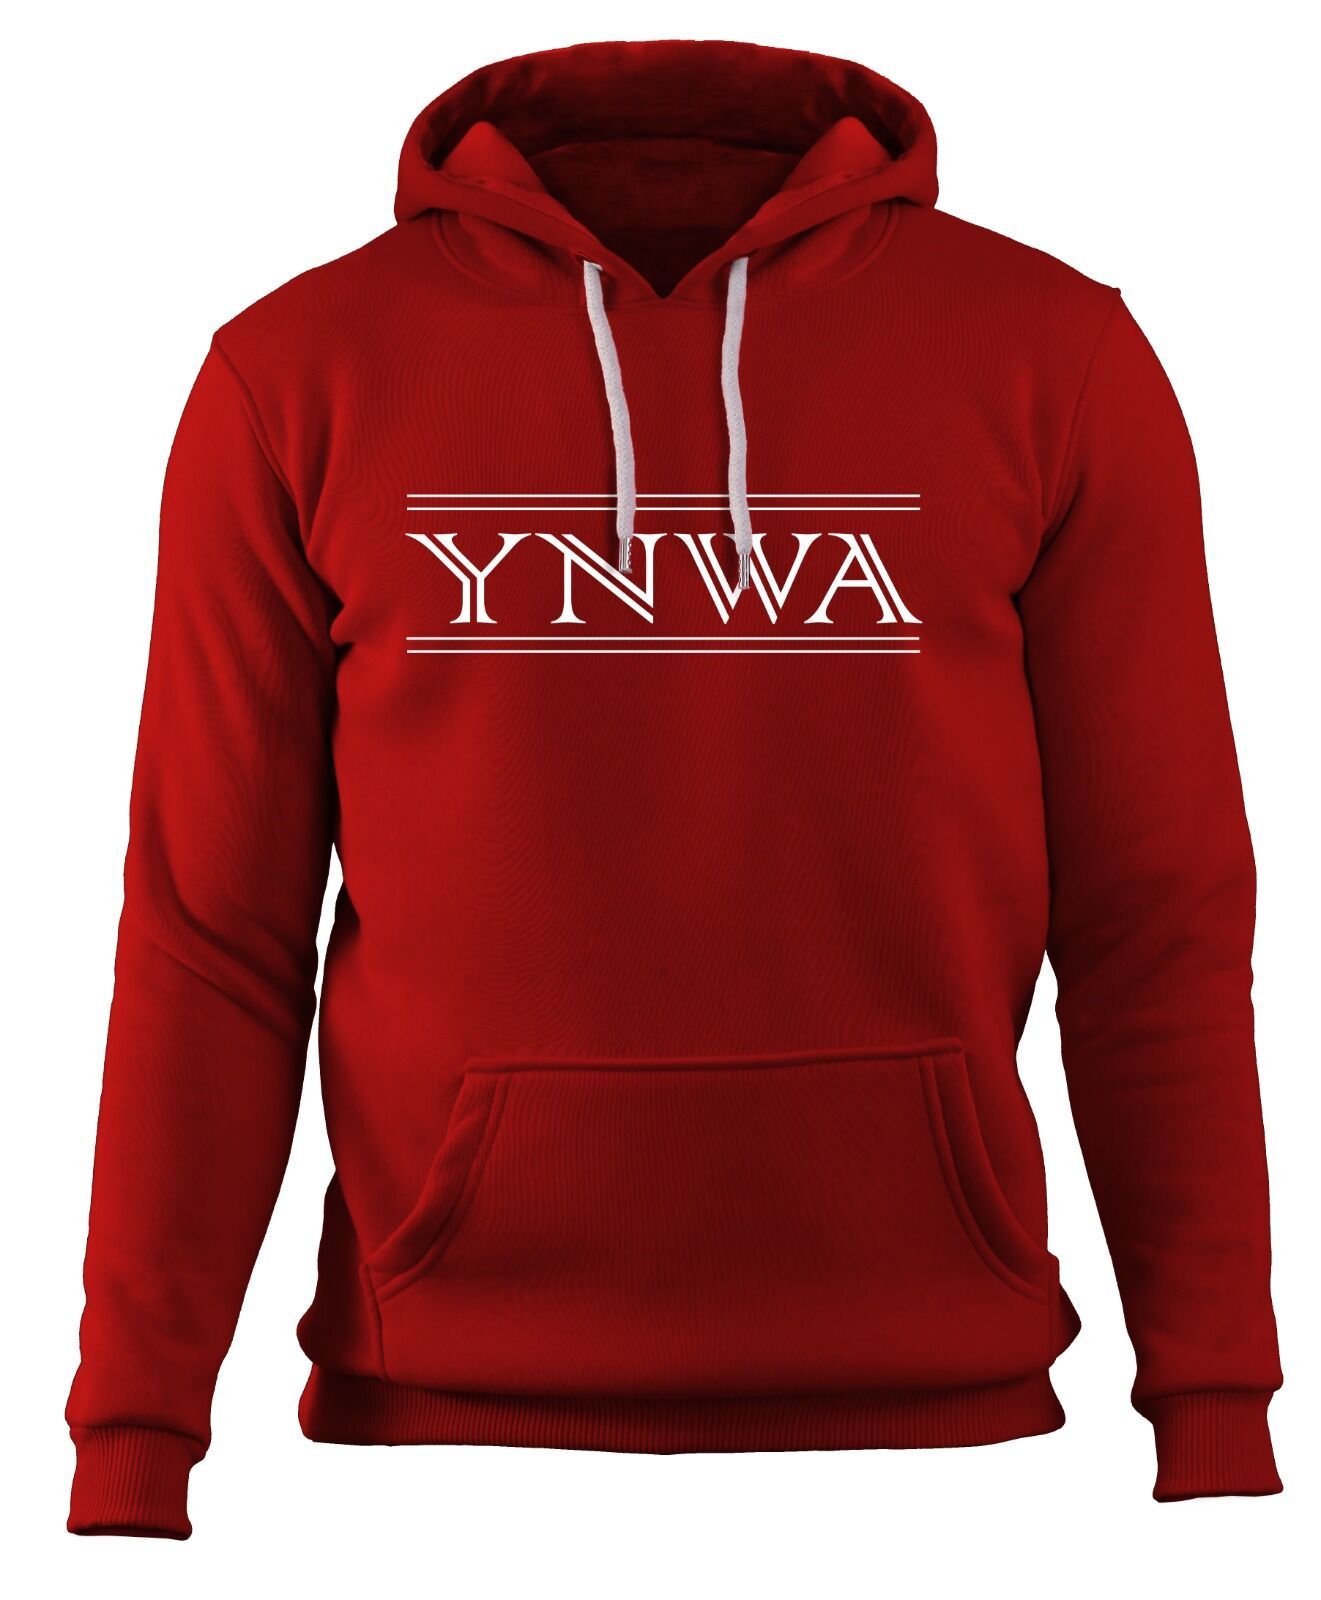 Liverpool - YNWA - Sweatshirt